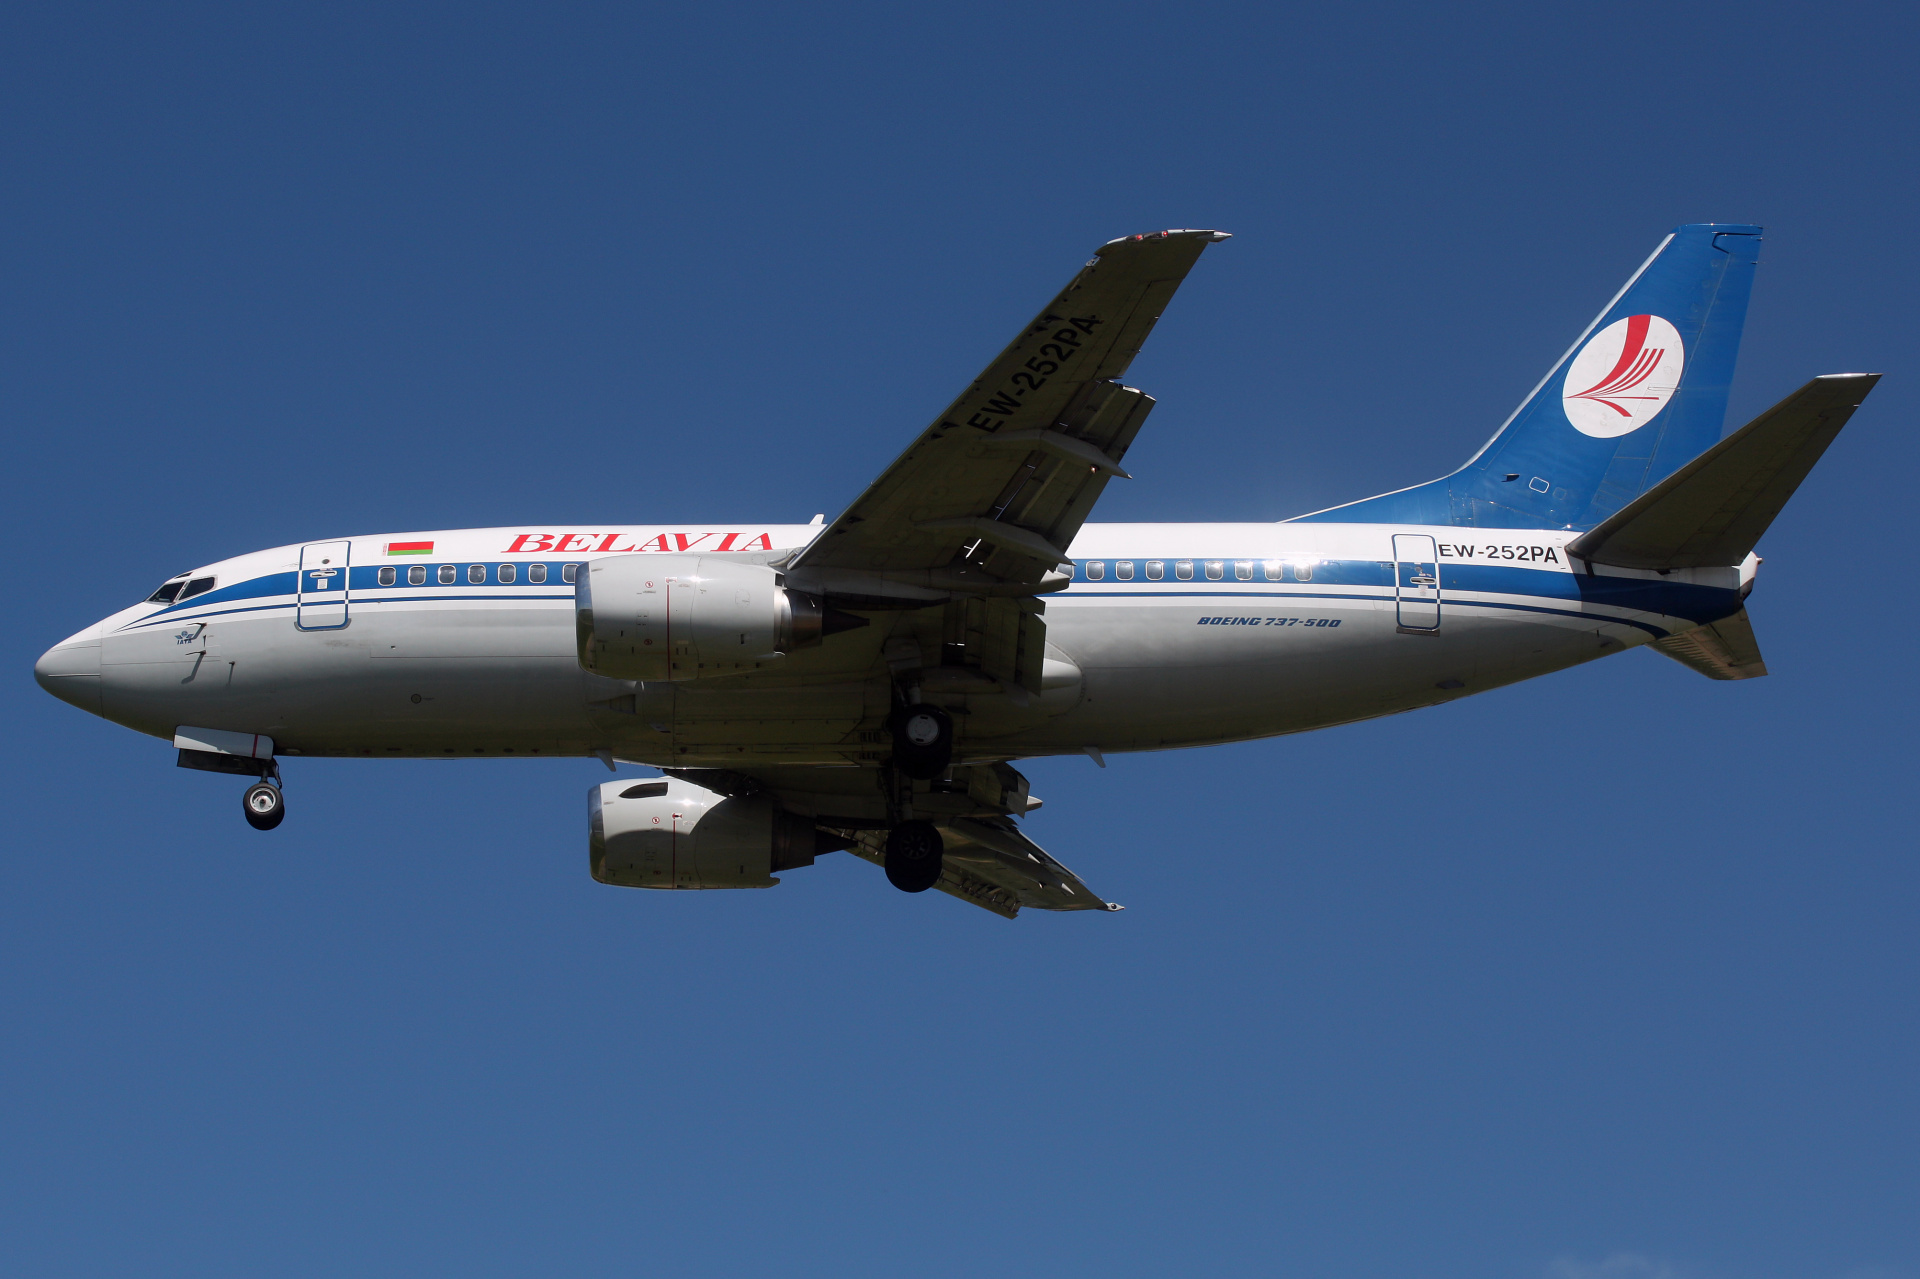 EW-252PA (Aircraft » EPWA Spotting » Boeing 737-500 » Belavia)